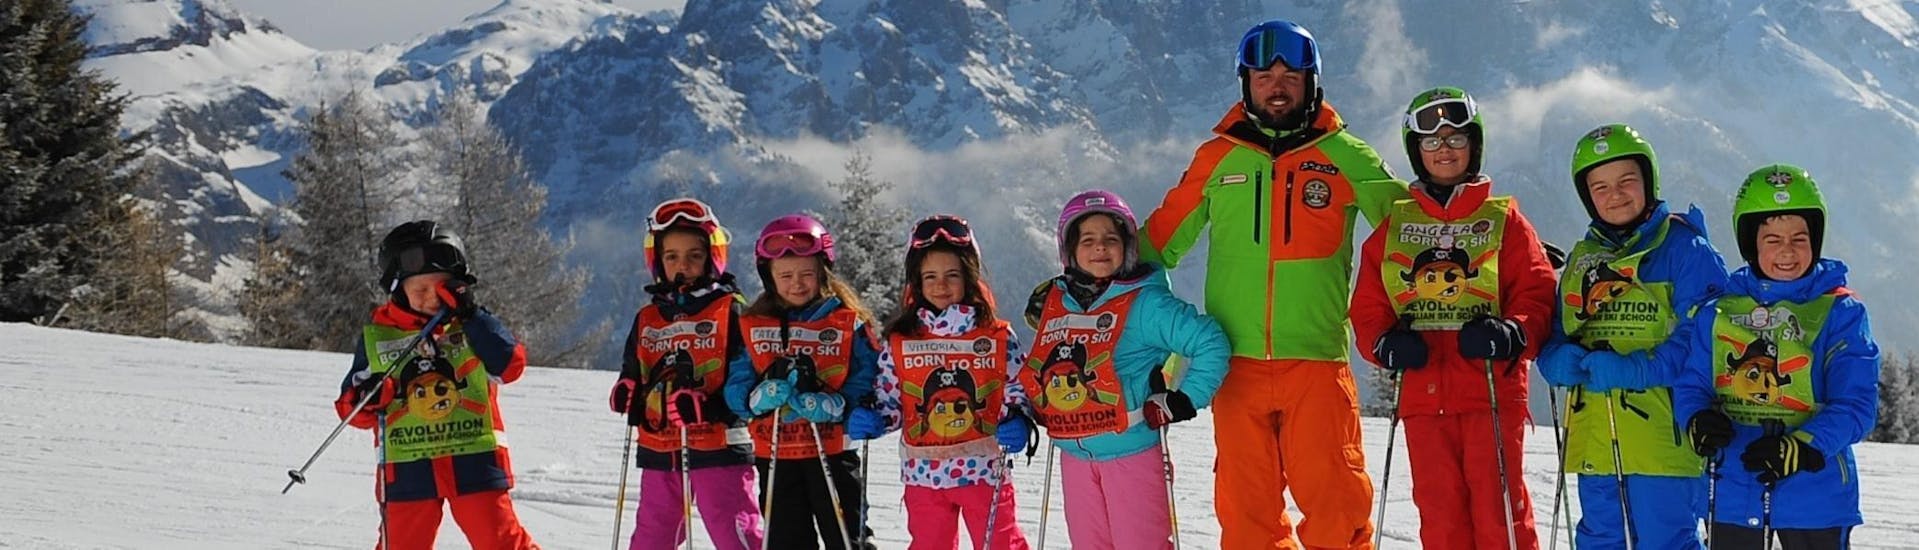 Kinder Skikurs "Halbtags" (4-13 Jahre) - Weihnachten in der Skischule Scuola di Sci AEvolution Folgarida beginnt bald, Kinder und Skilehrer posieren für ein Foto. 